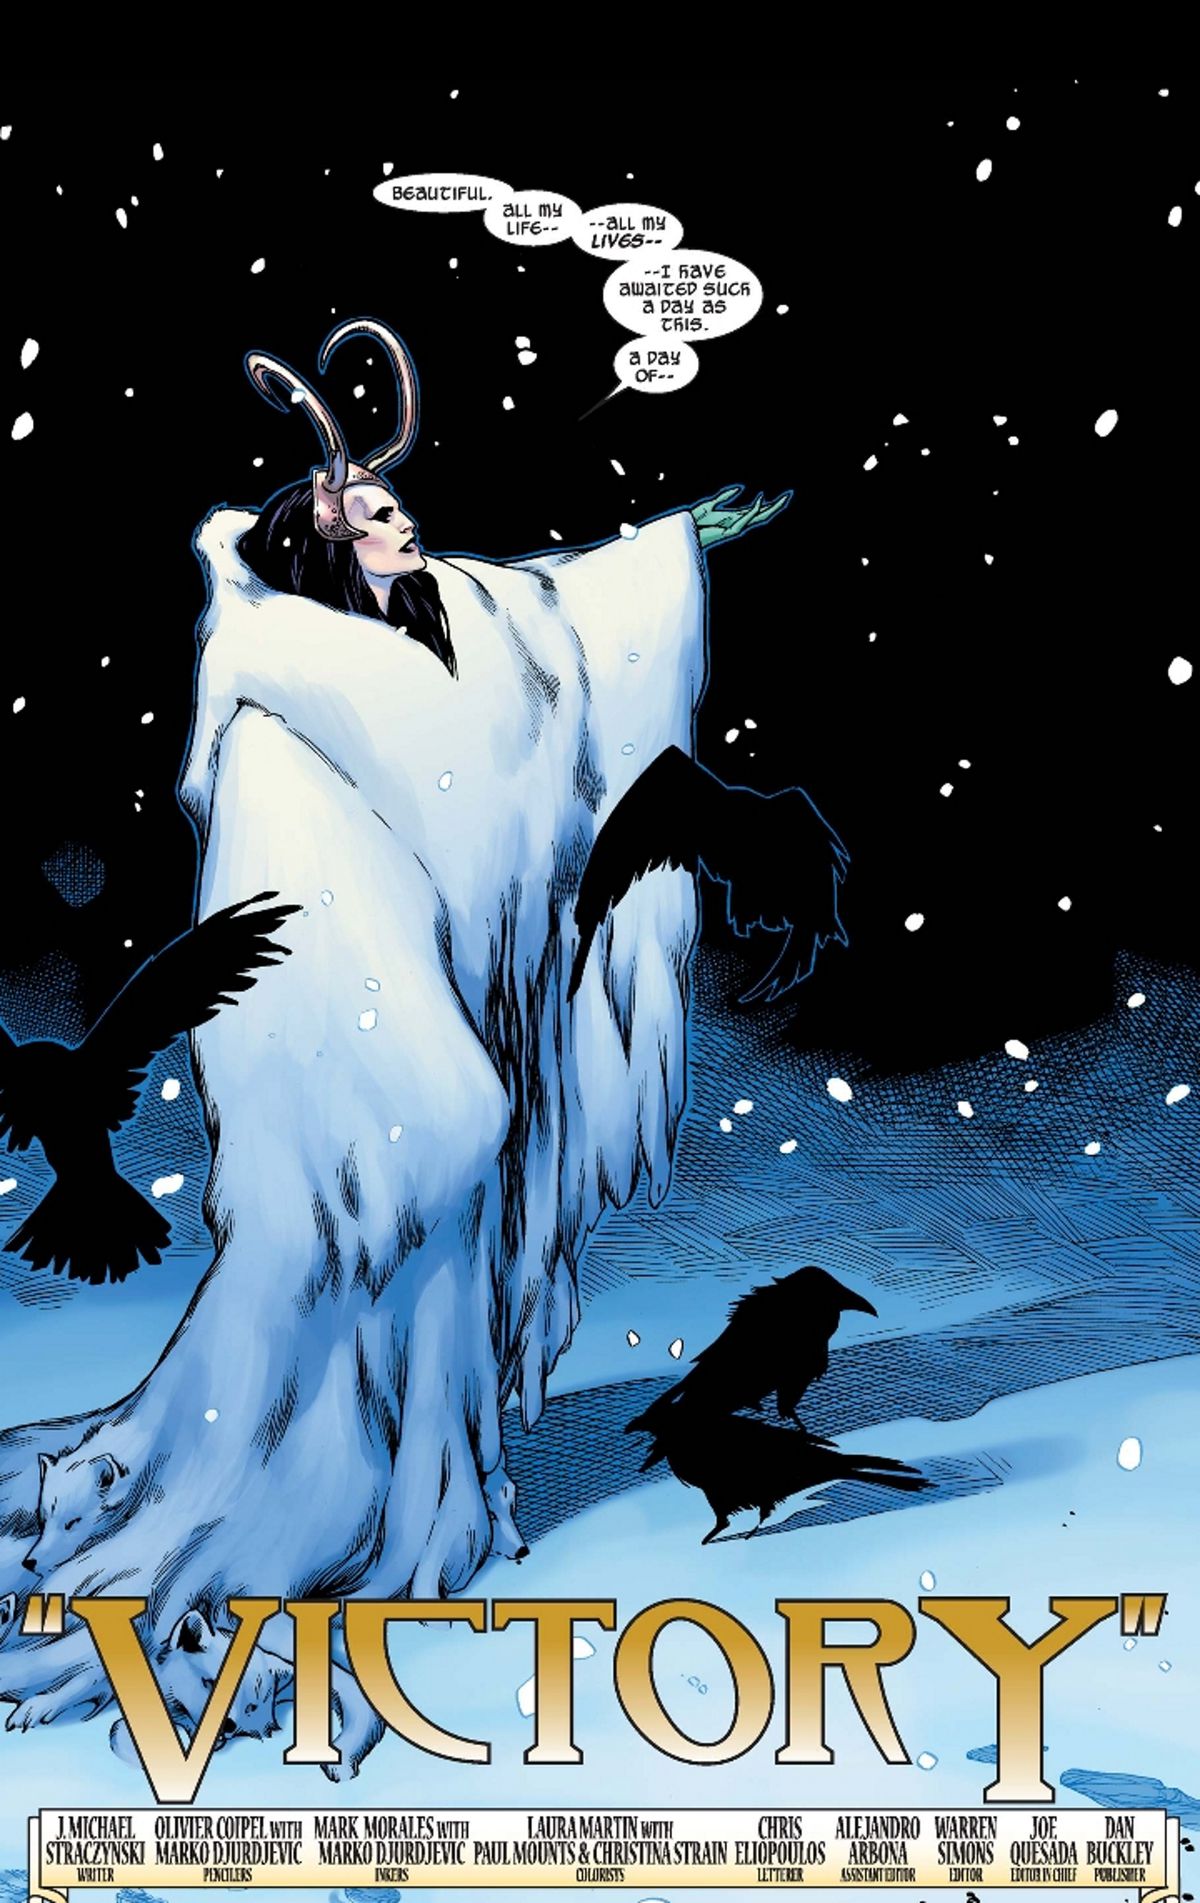 Lady Loki cattura i fiocchi di neve e medita maliziosamente sulla sua vittoria, indossando un cerchietto con le corna e una gigantesca pelliccia bianca. 